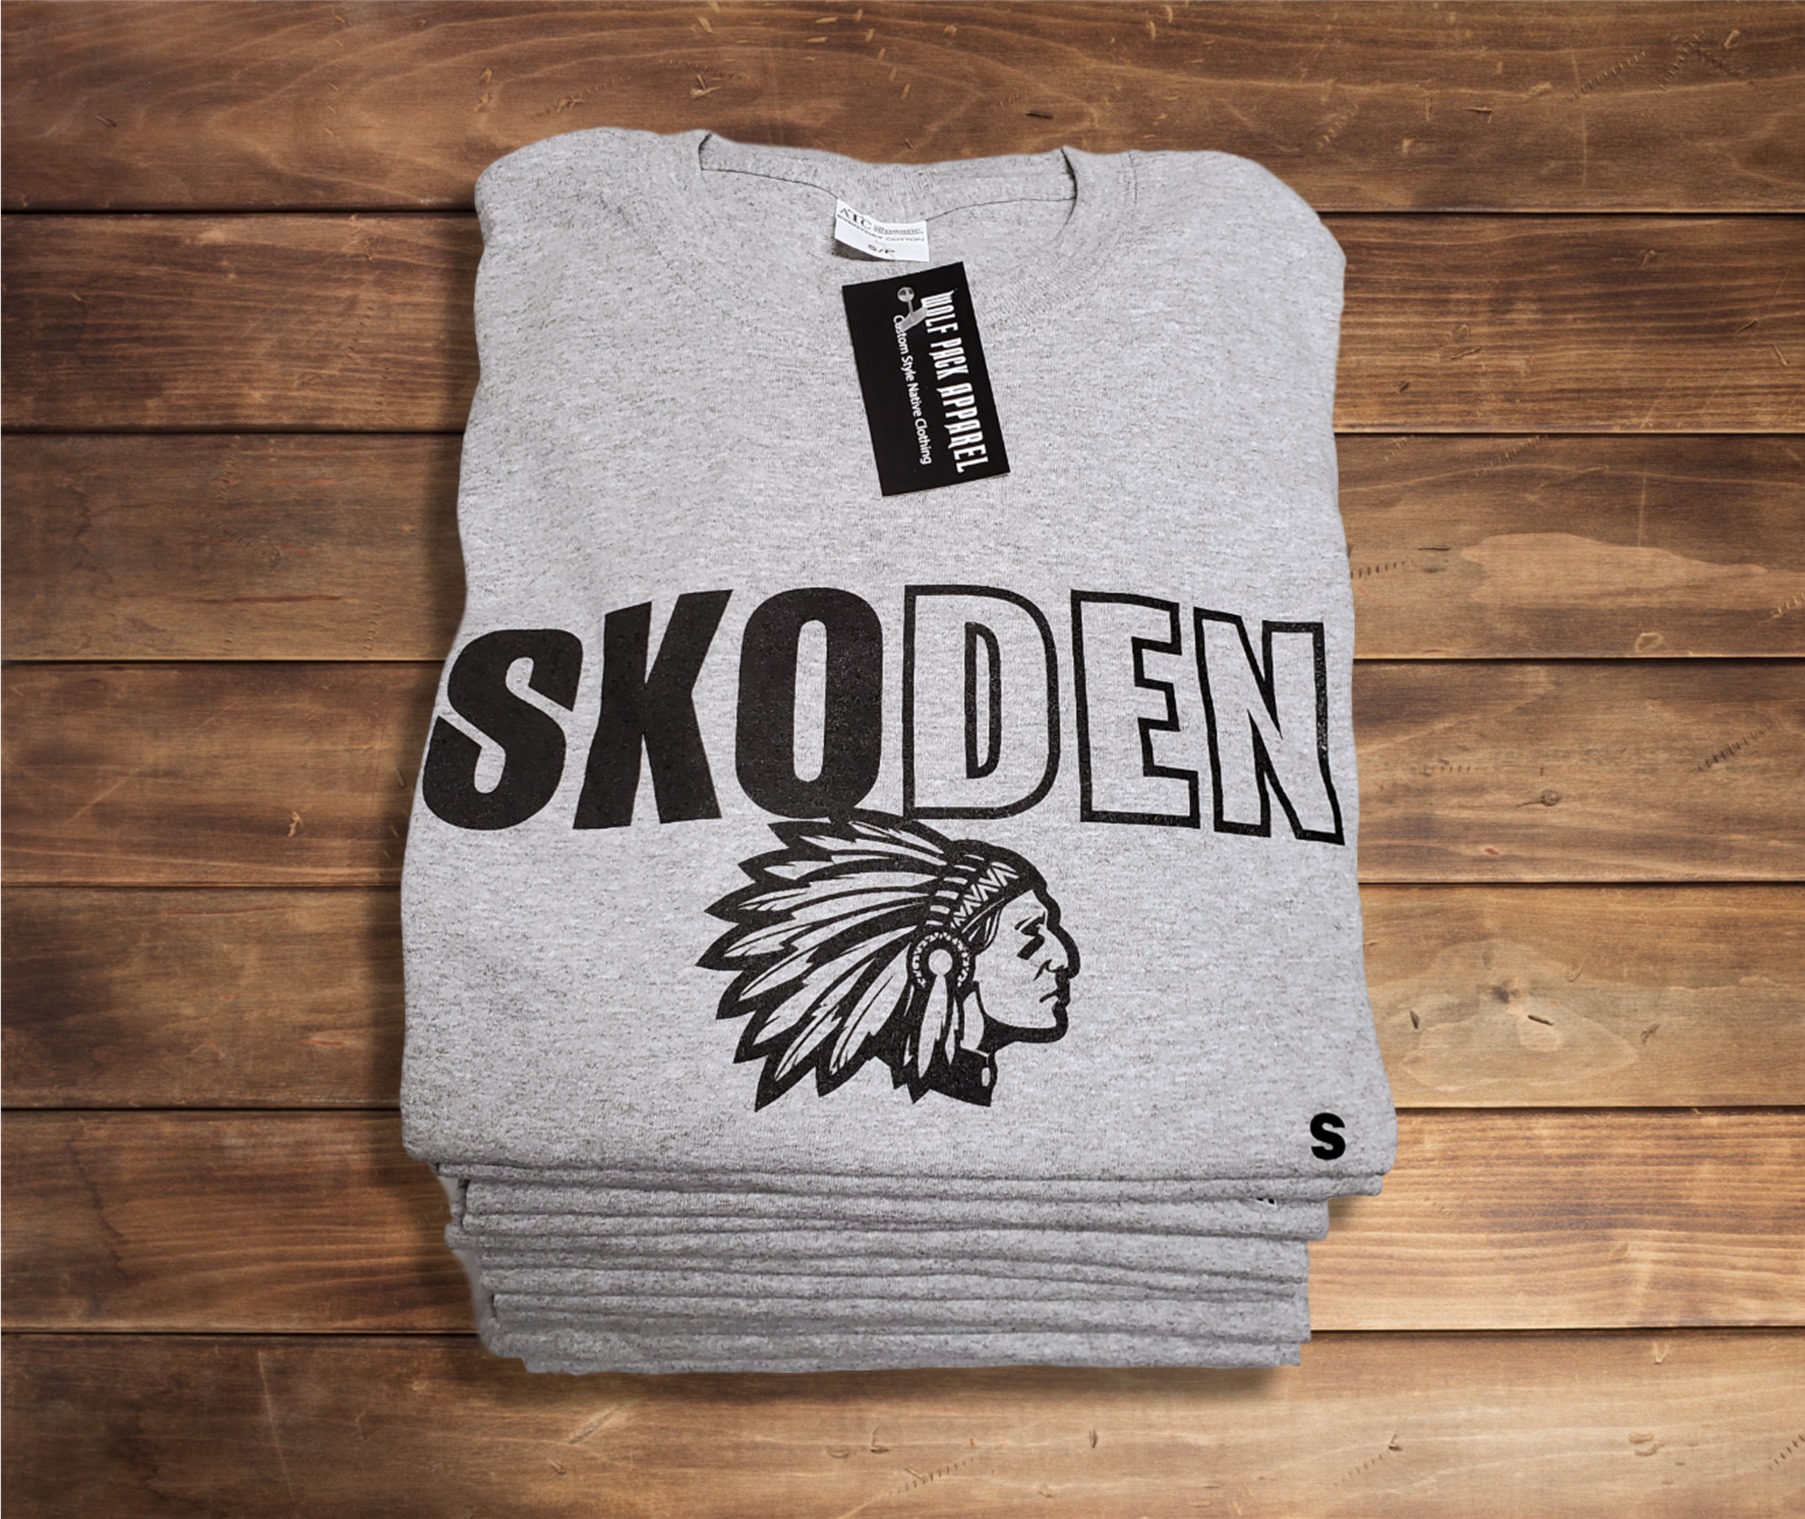 Skoden - Skoden the native people